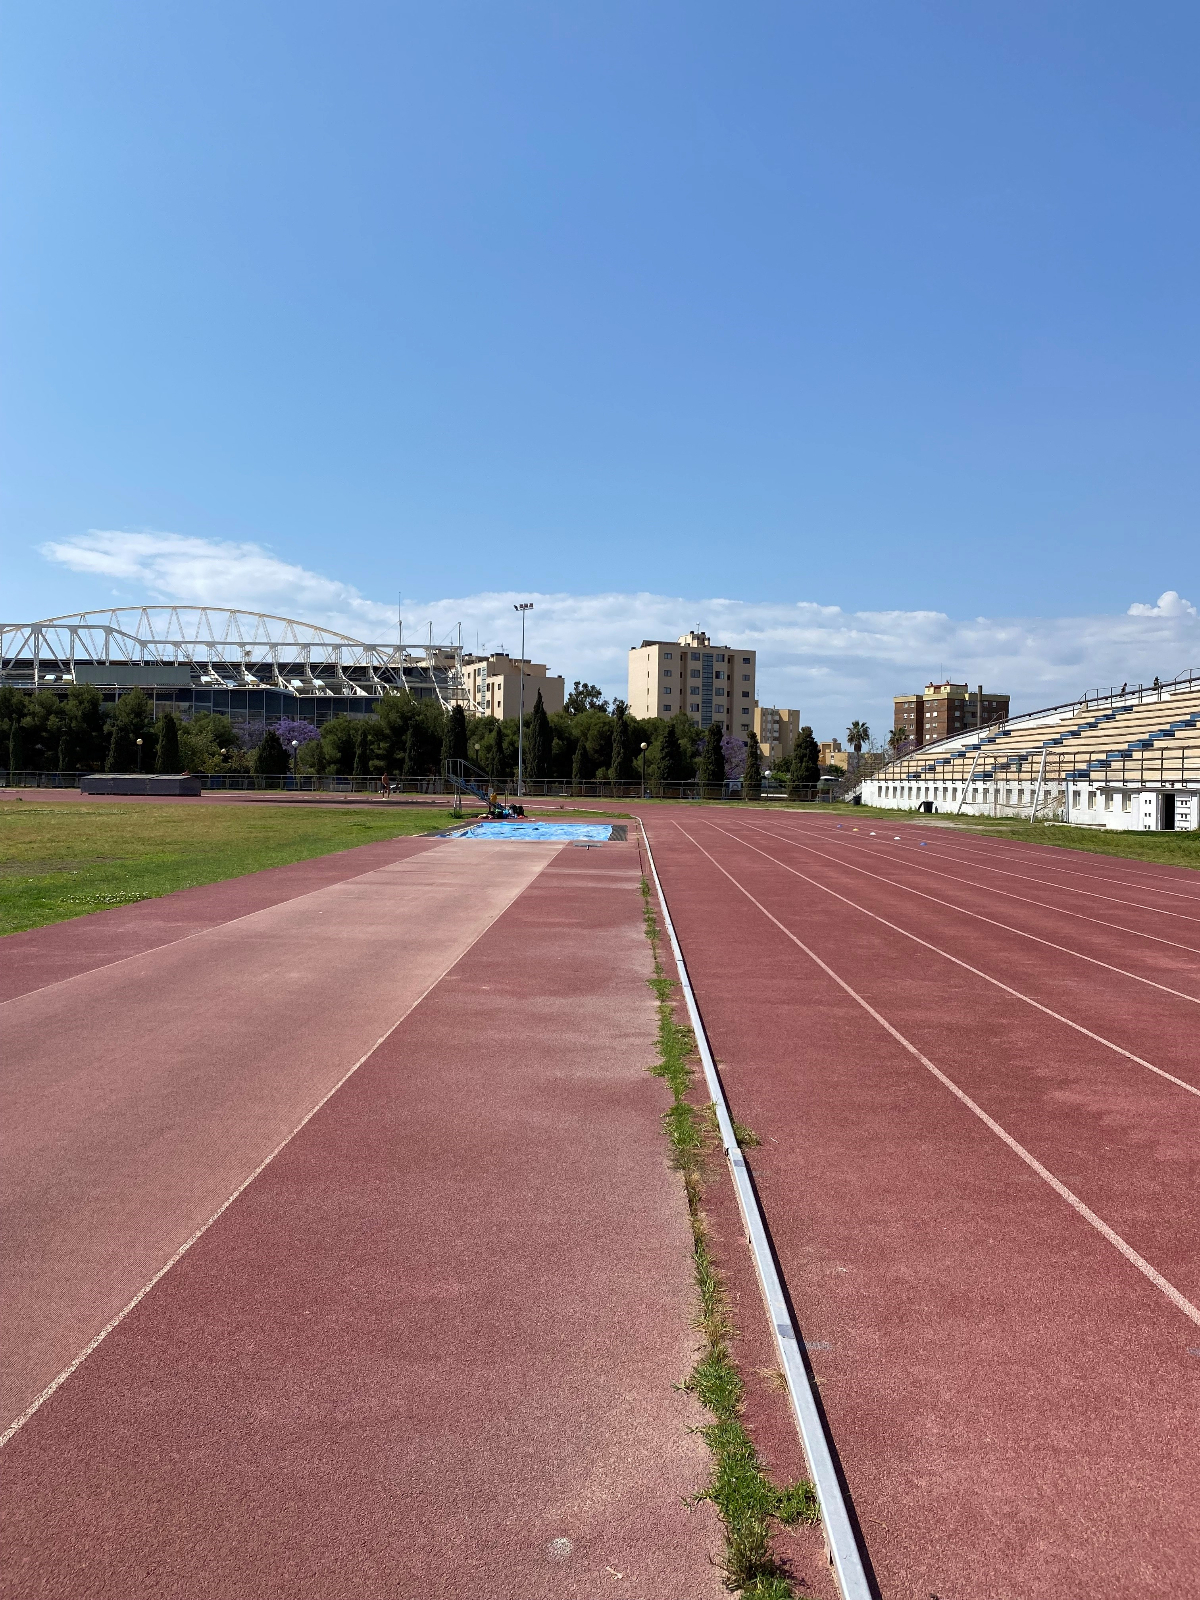 {"caption":"Estadio Municipal de Atletismo Joaquin Villar","uploader":"Uploaded by: Josefin, Athlete from Finland"}